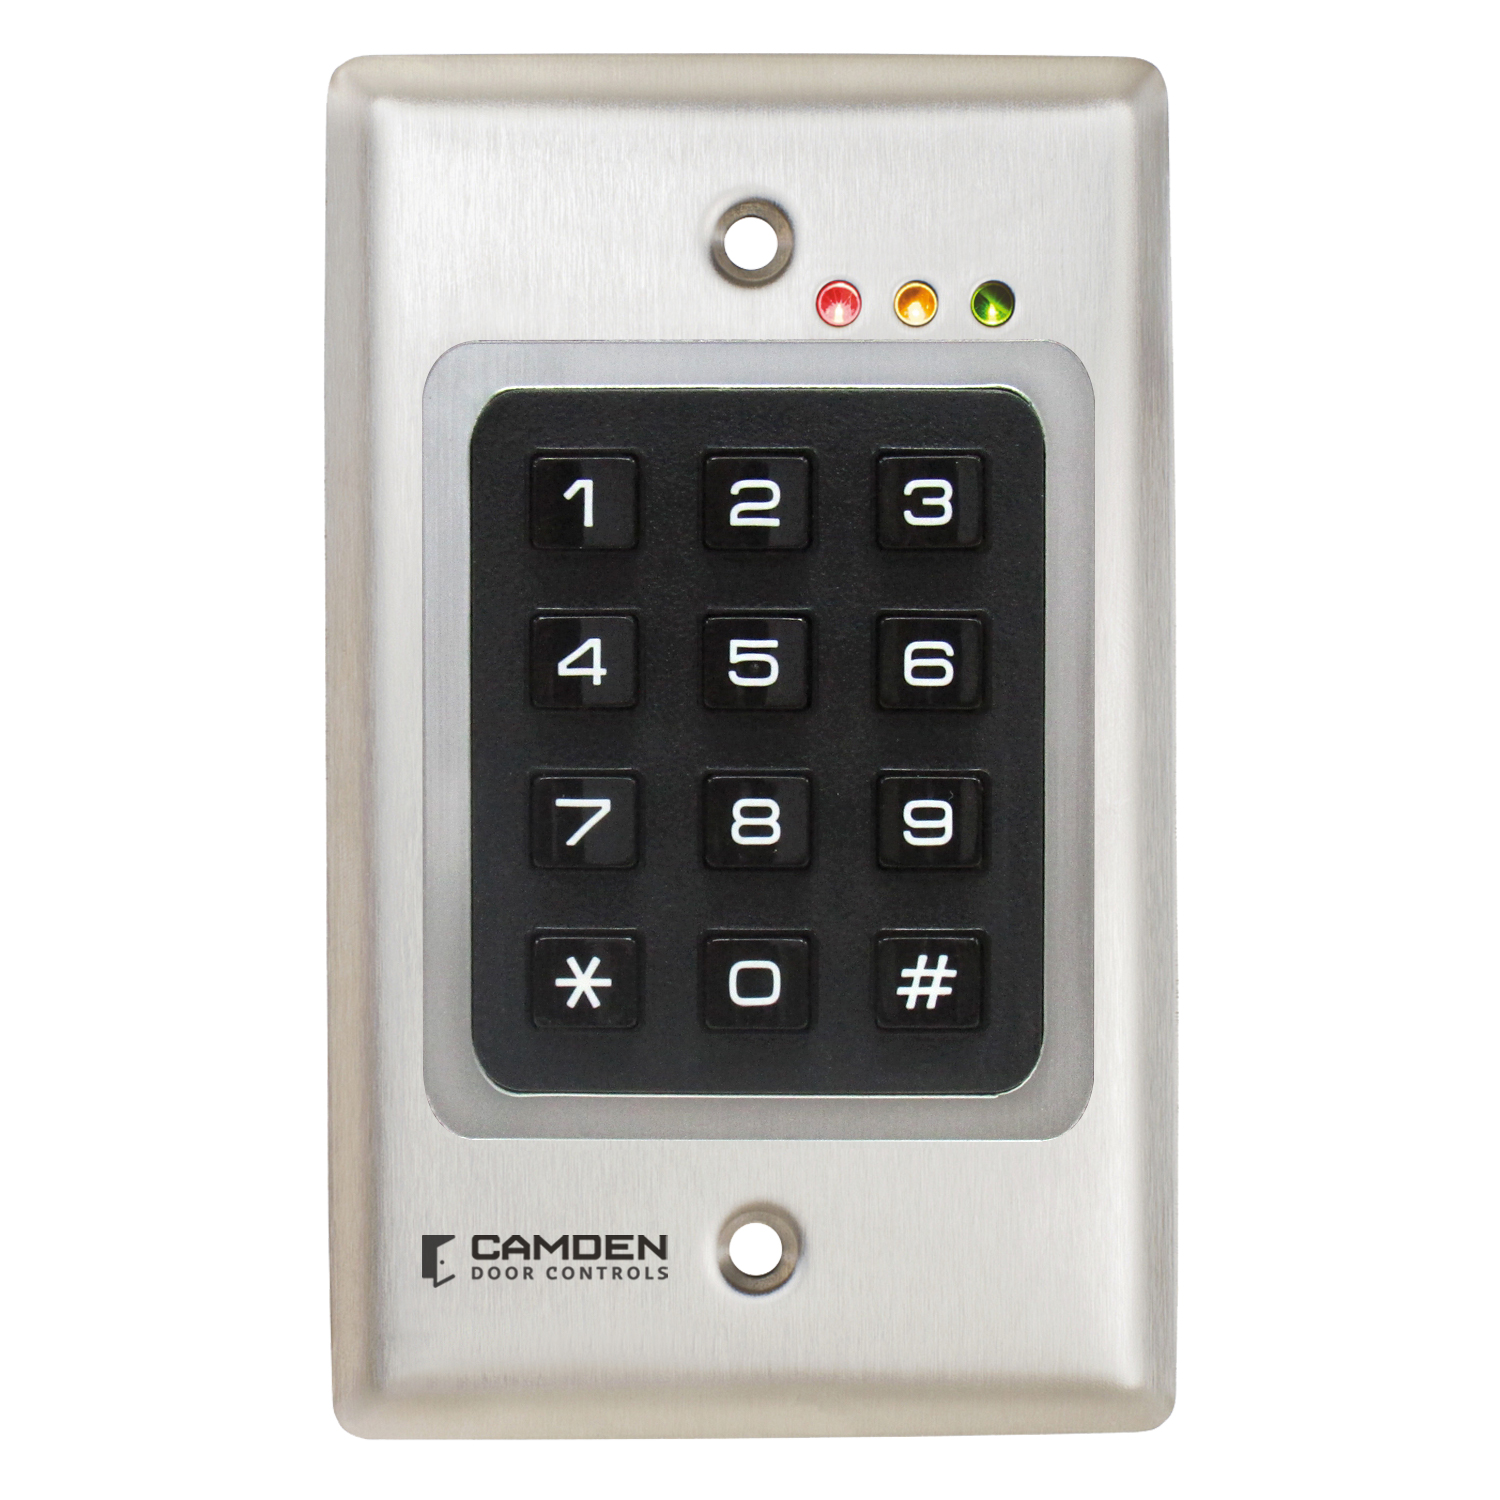 CM-850 - CM-800 Series: Interruptores basculantes - Interruptores para aplicaciones especiales - Door Activation Devices